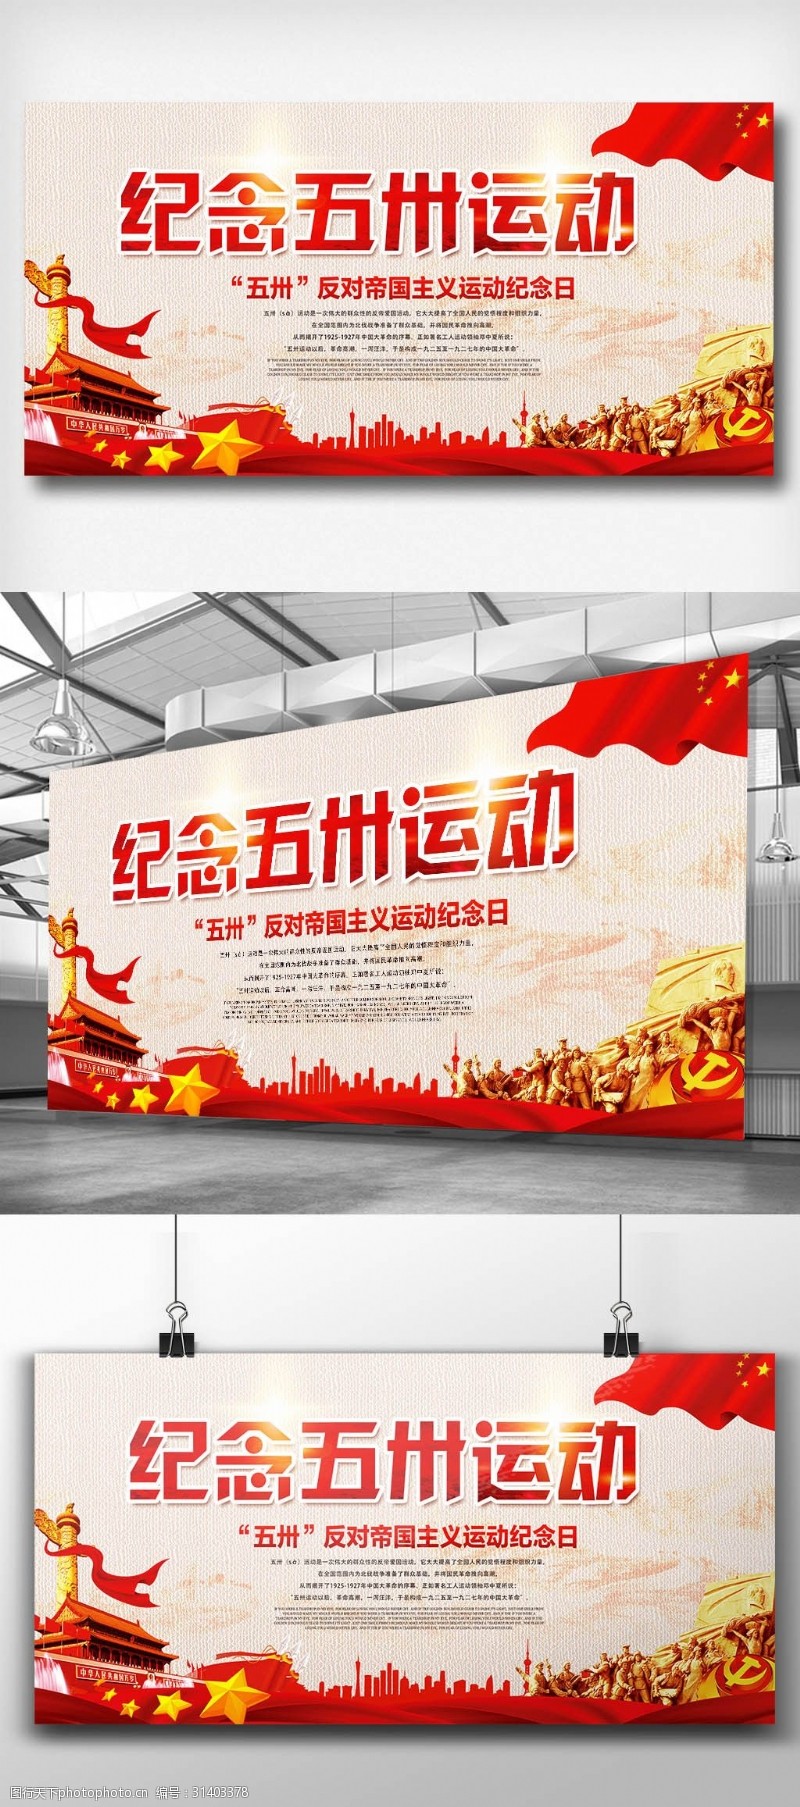 宣传栏模板五卅运动宣传展板设计